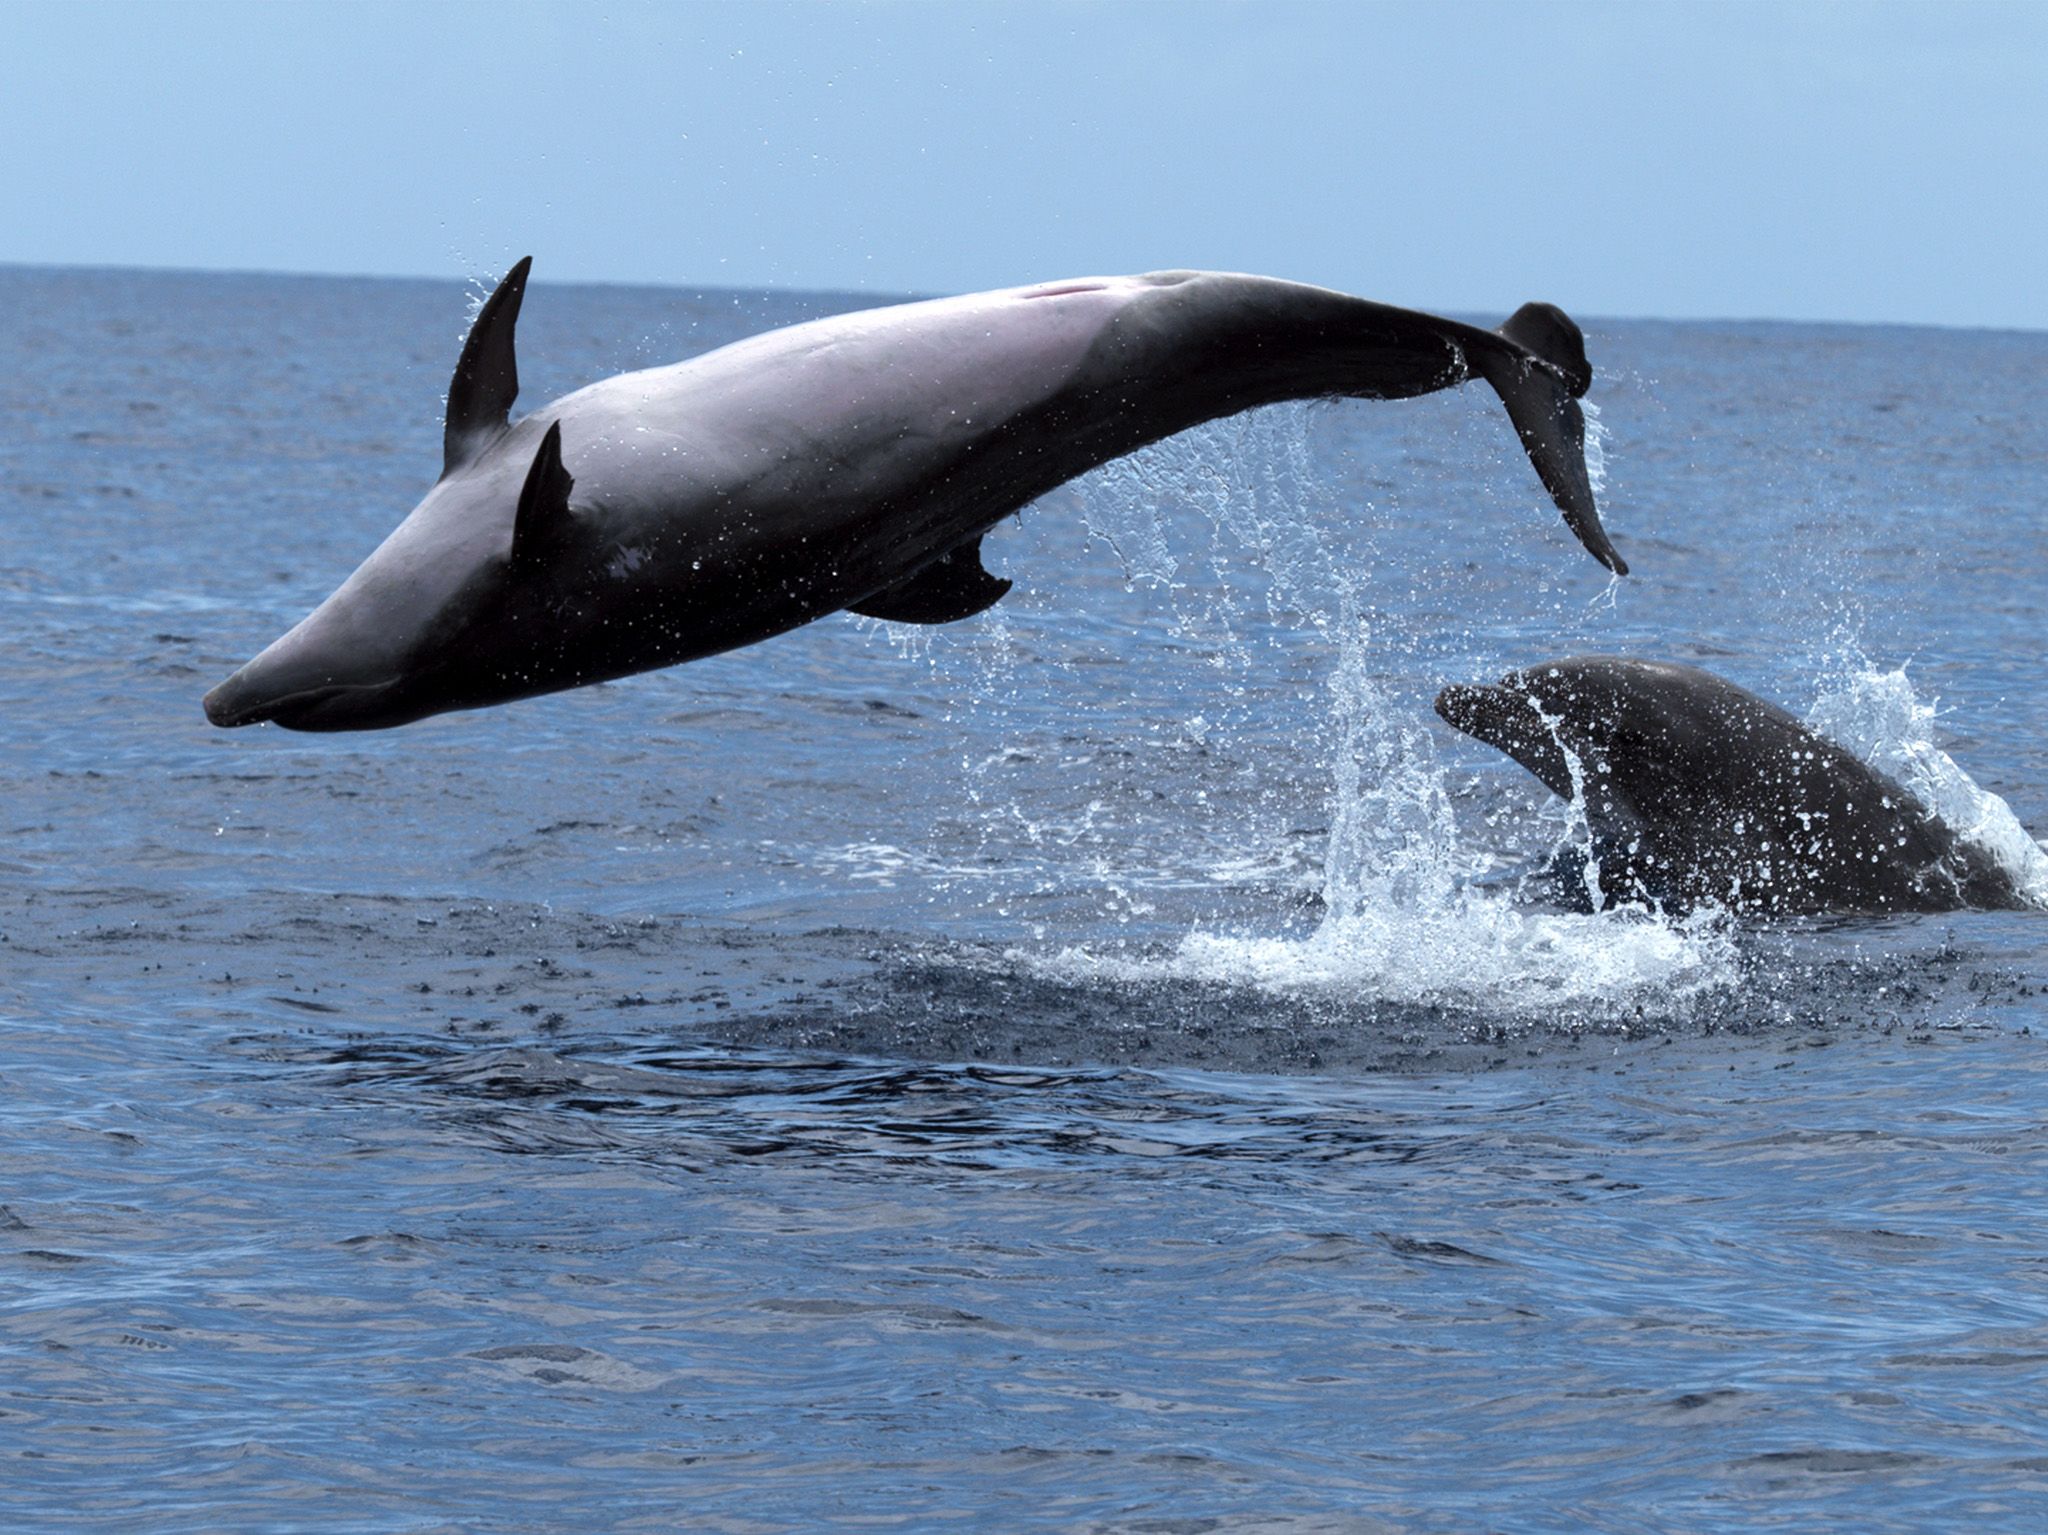 جزر الكناري، إسبانيا: الدلافين تقفز خارج المياه. هذه... [Photo of the day - ديسمبر 2017]